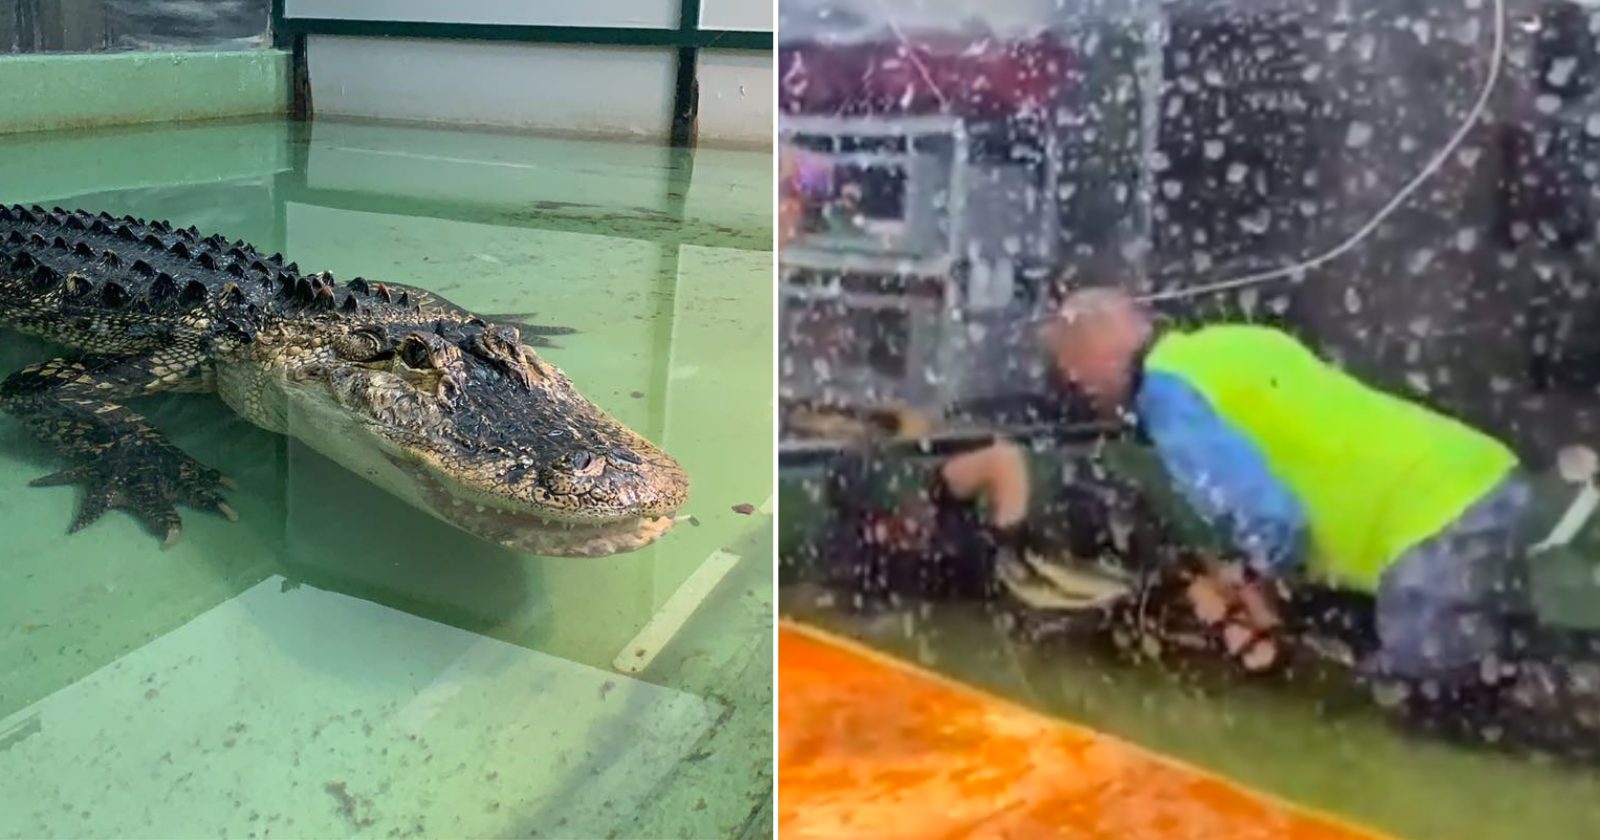 Visitante salva tratadora arrastada por crocodilo